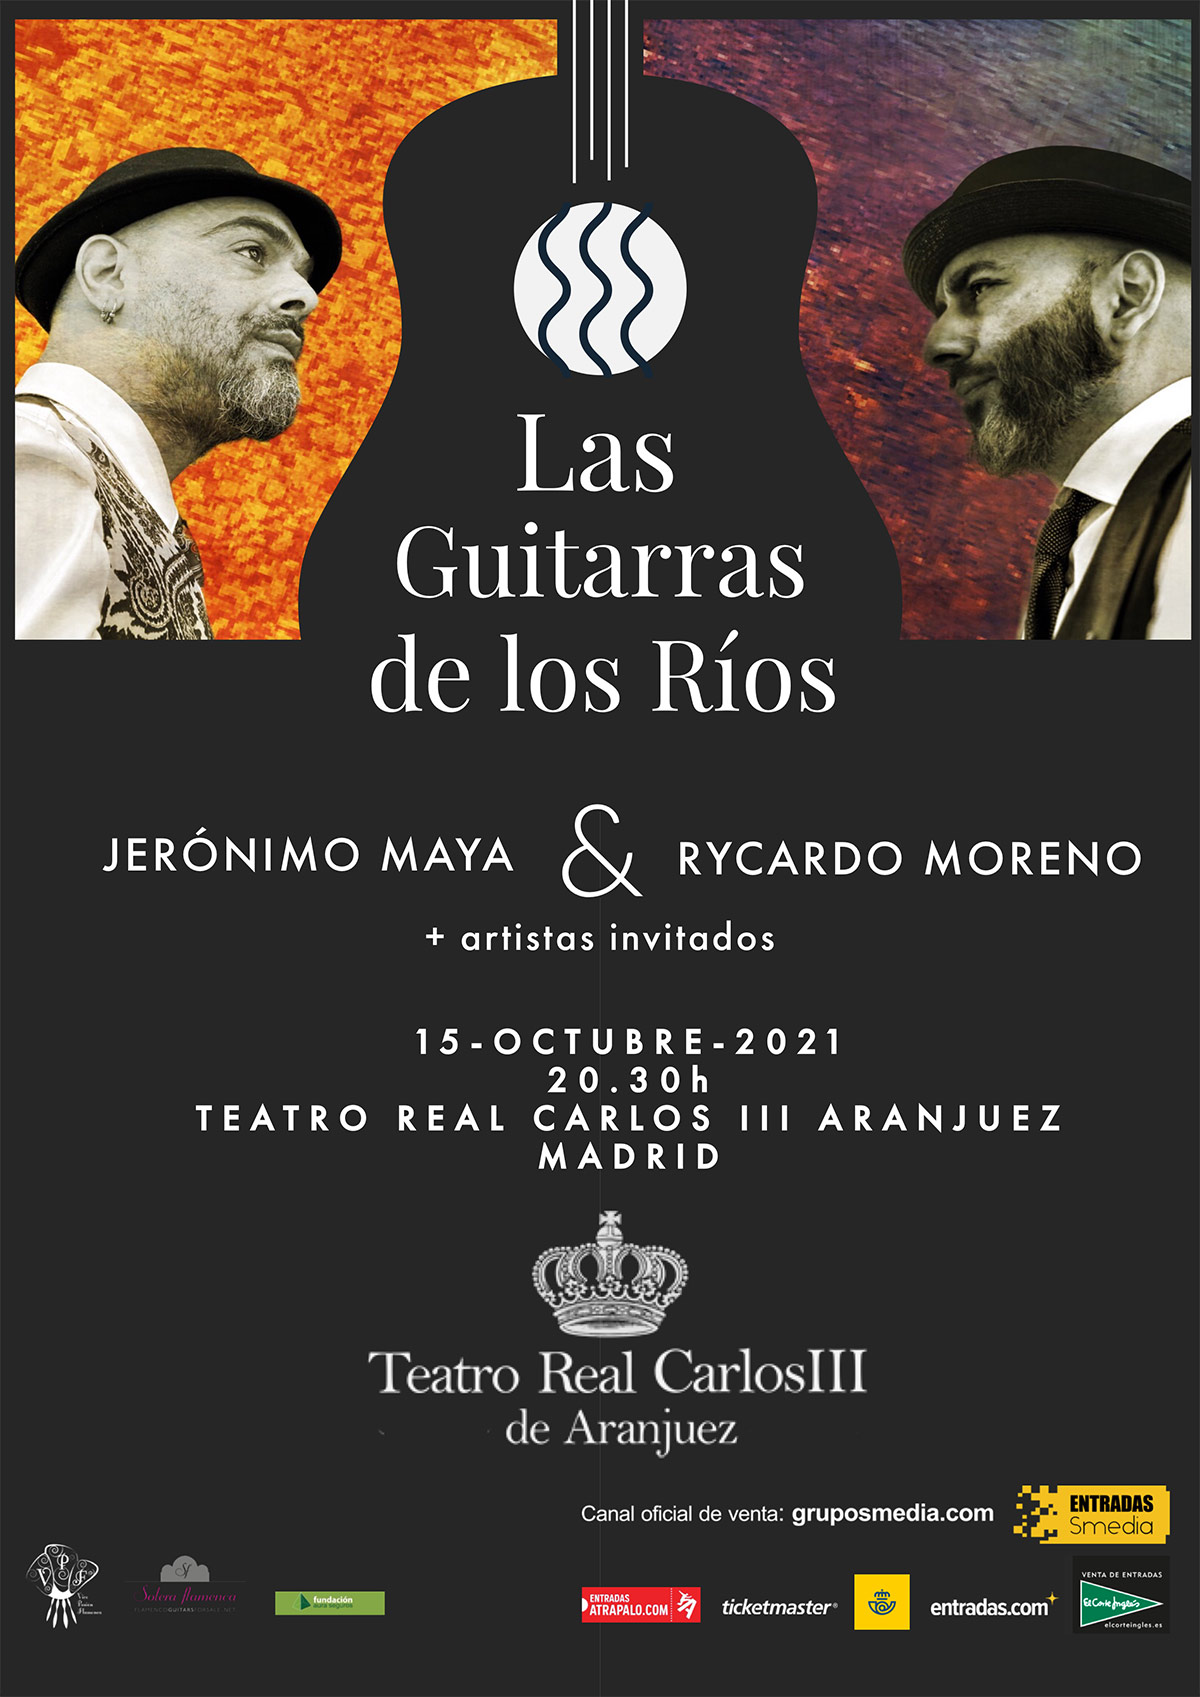 Rycardo Moreno & Jerónimo Maya